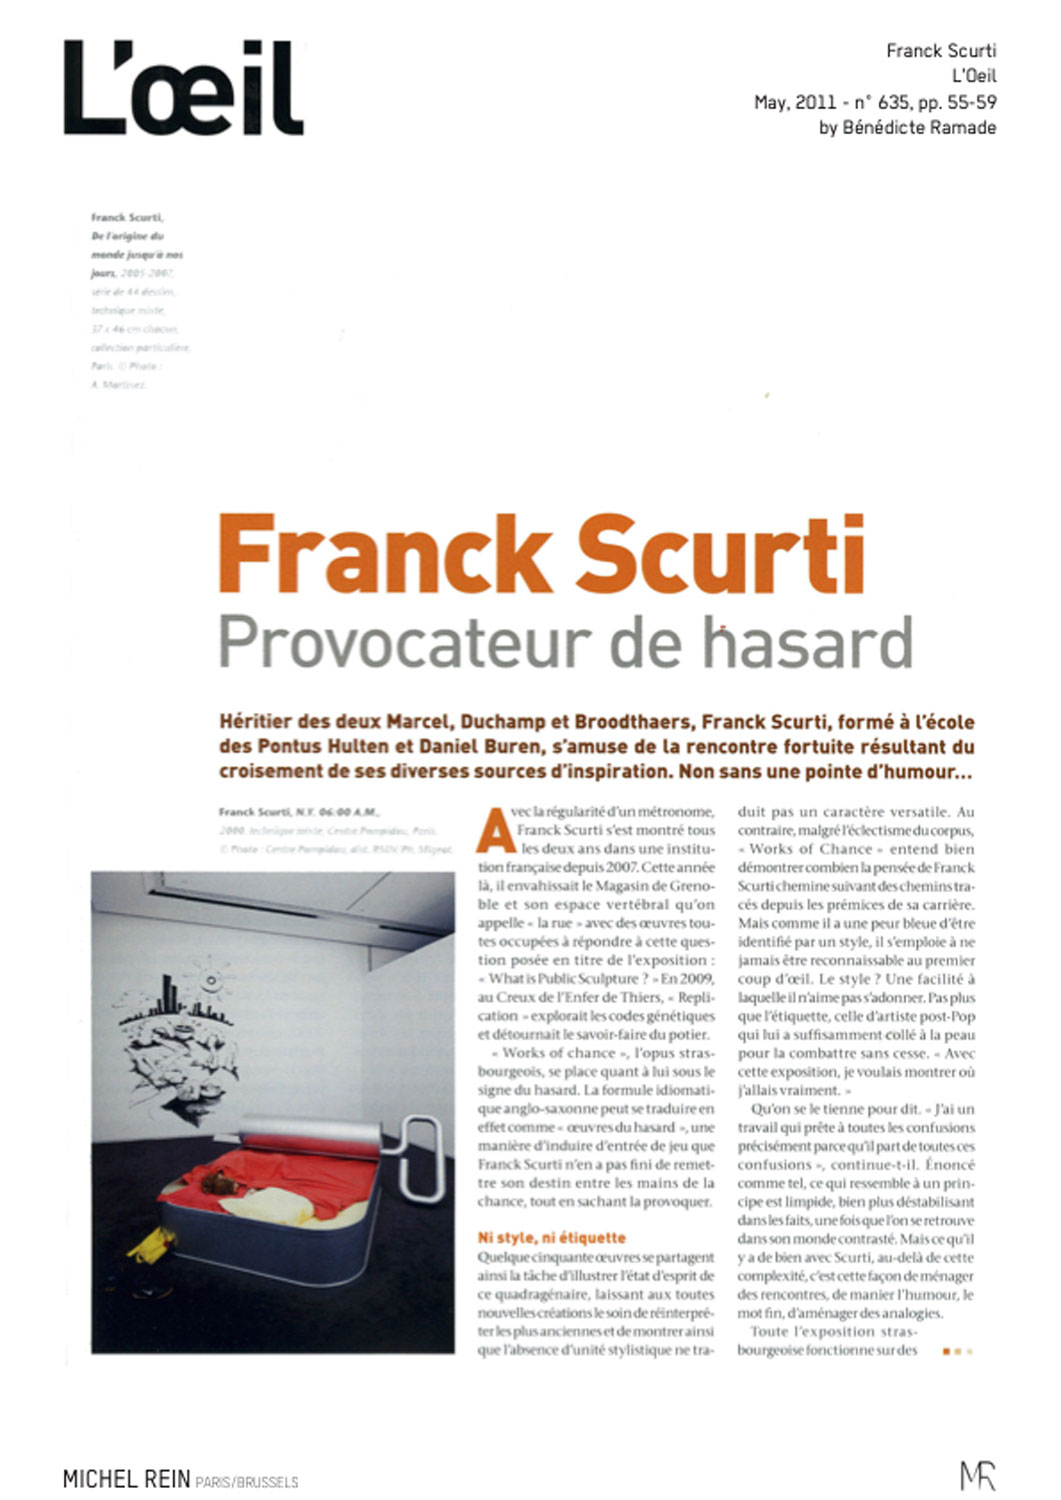 Franck Scurti provocateur de hasard - L'Oeil